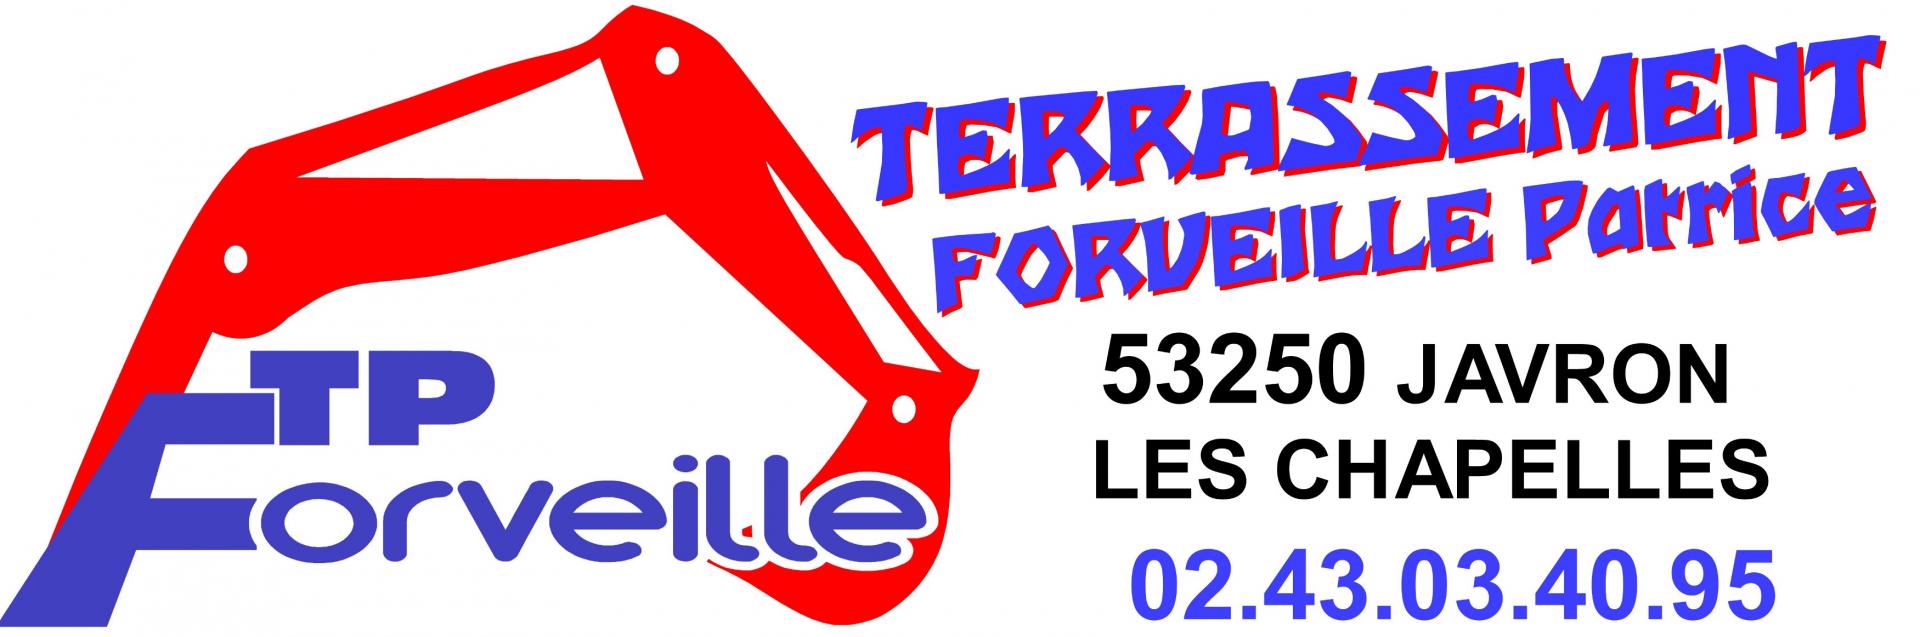 Terrassement FORVEILLE Patrice